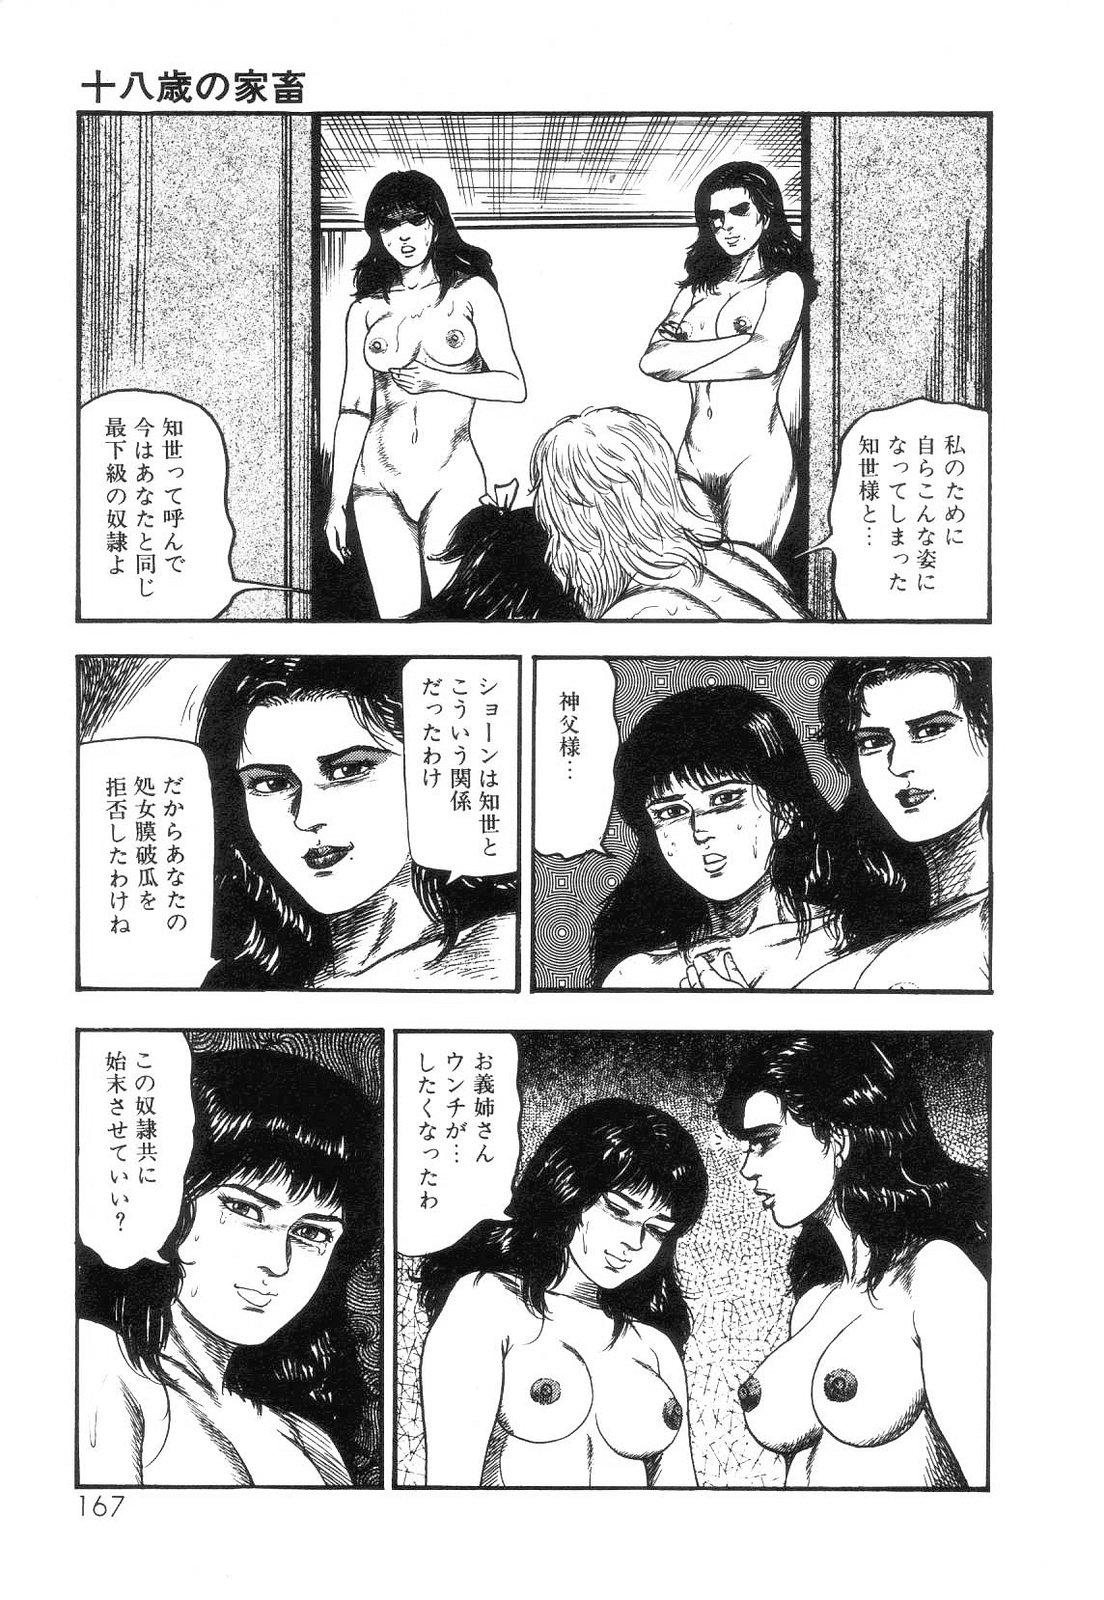 Shiro no Mokushiroku Vol. 4 - Bichiku Karen no Shou 169